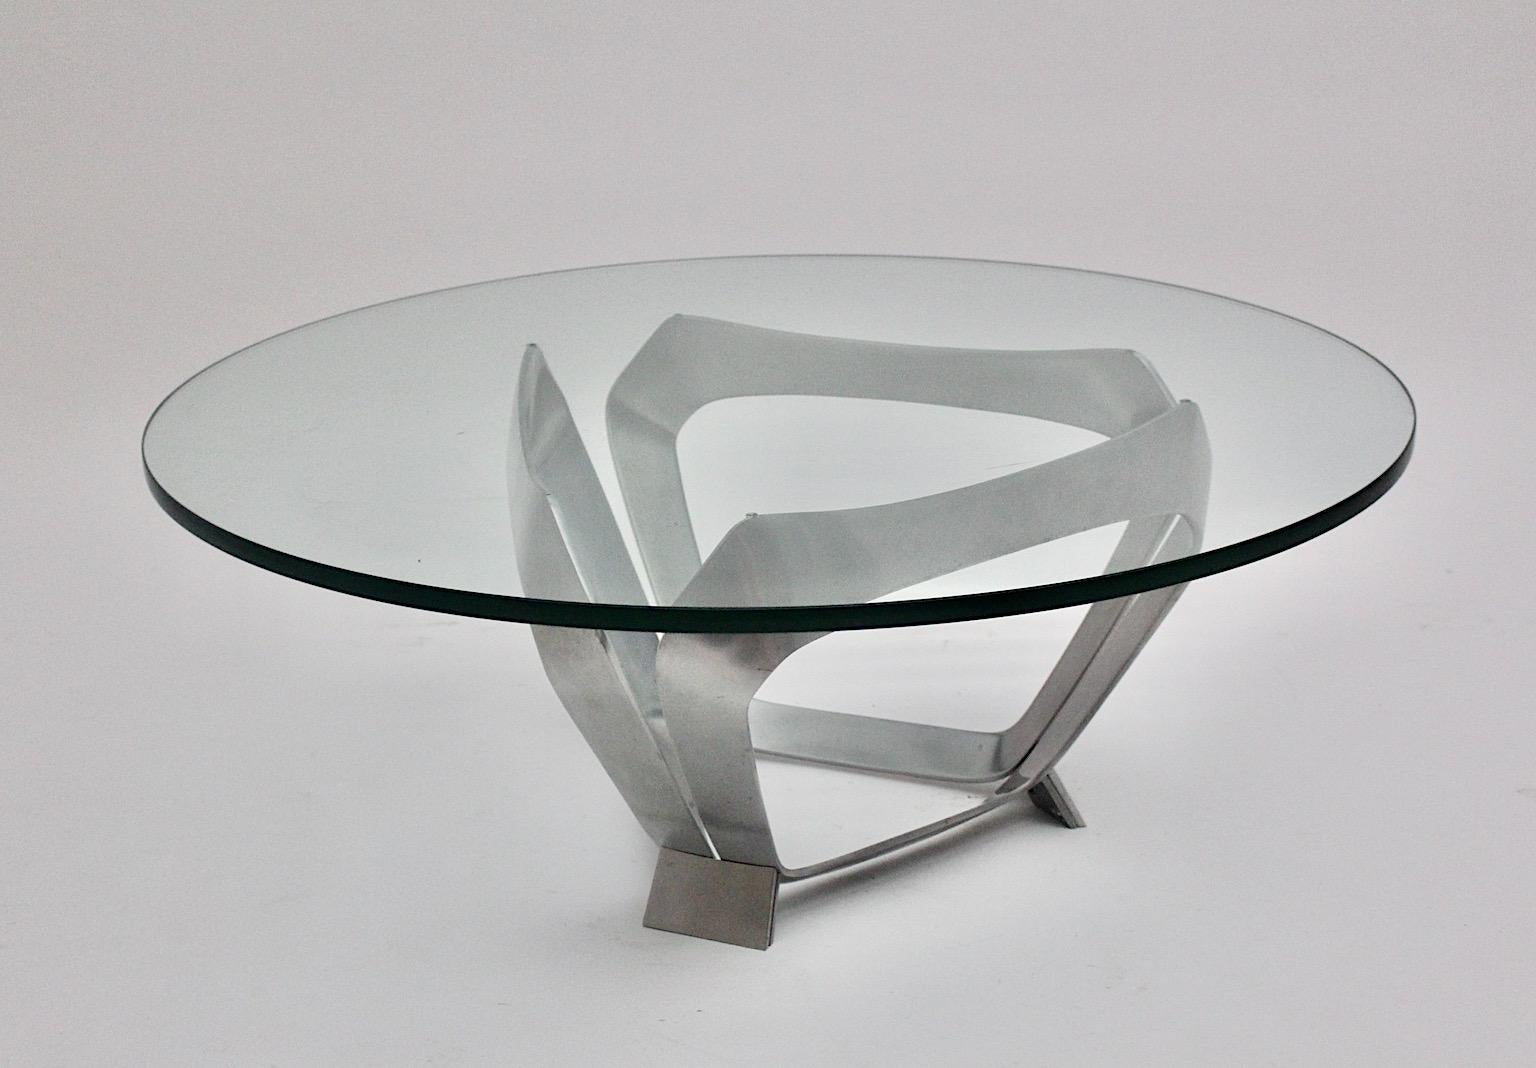 Table basse ou table de canapé vintage en aluminium et verre Space Age, qui a été conçue par Knut Hesterberg dans les années 1960 en Allemagne pour Ronald Schmitt.
Magnifique construction en aluminium en forme de diamant sculptural, tandis que la